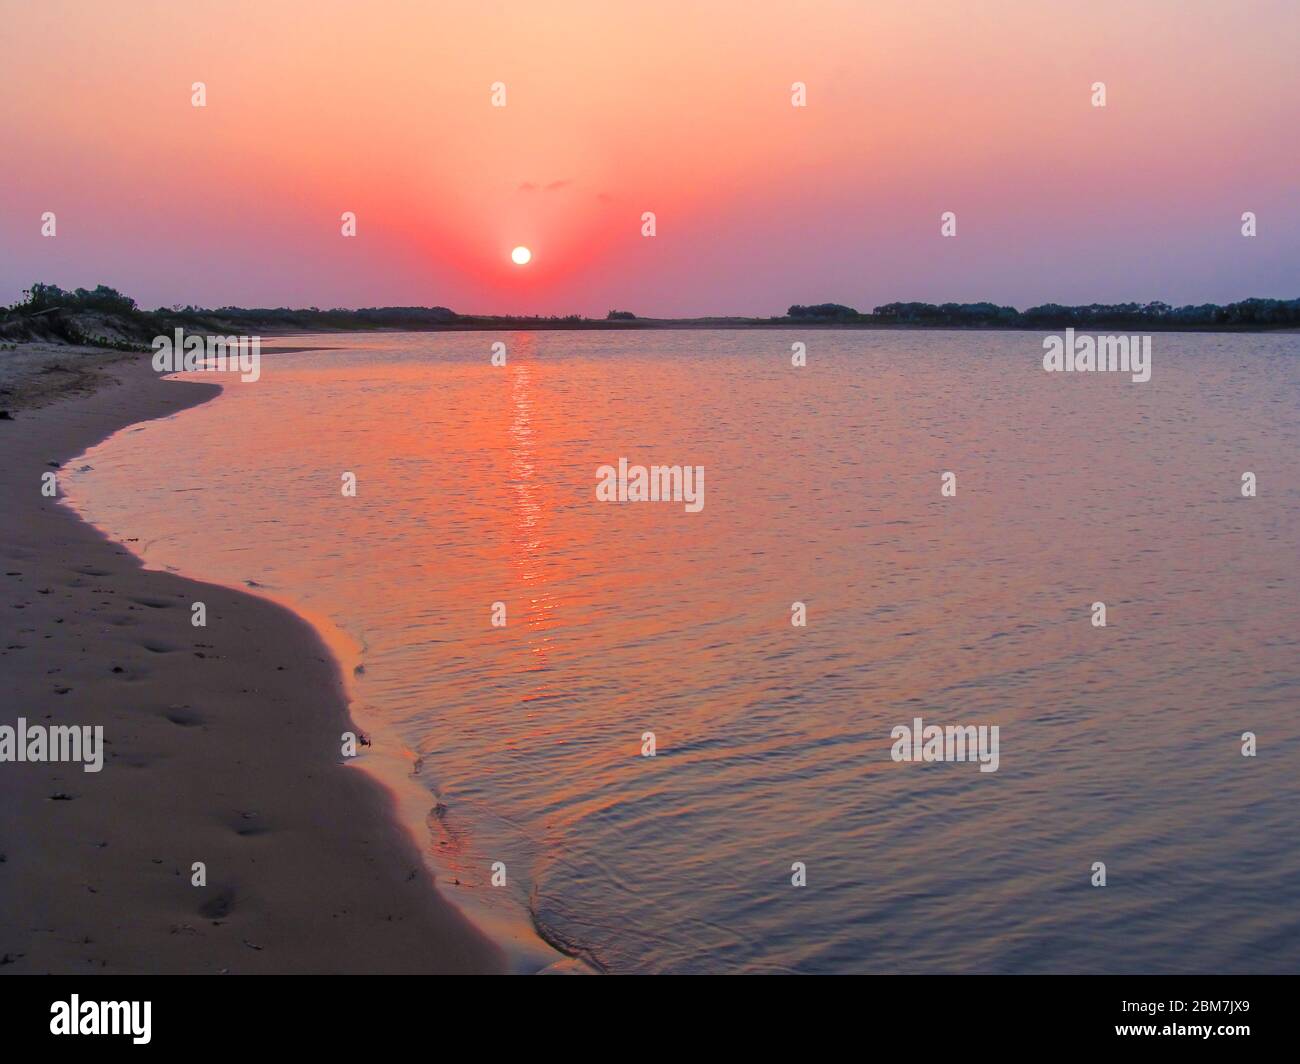 Sonnenuntergang, in einer abgelegenen Bucht auf der portugiesischen Insel, Teil des KaNyaka Barrier Island Systems im Süden Mosambiks Stockfoto